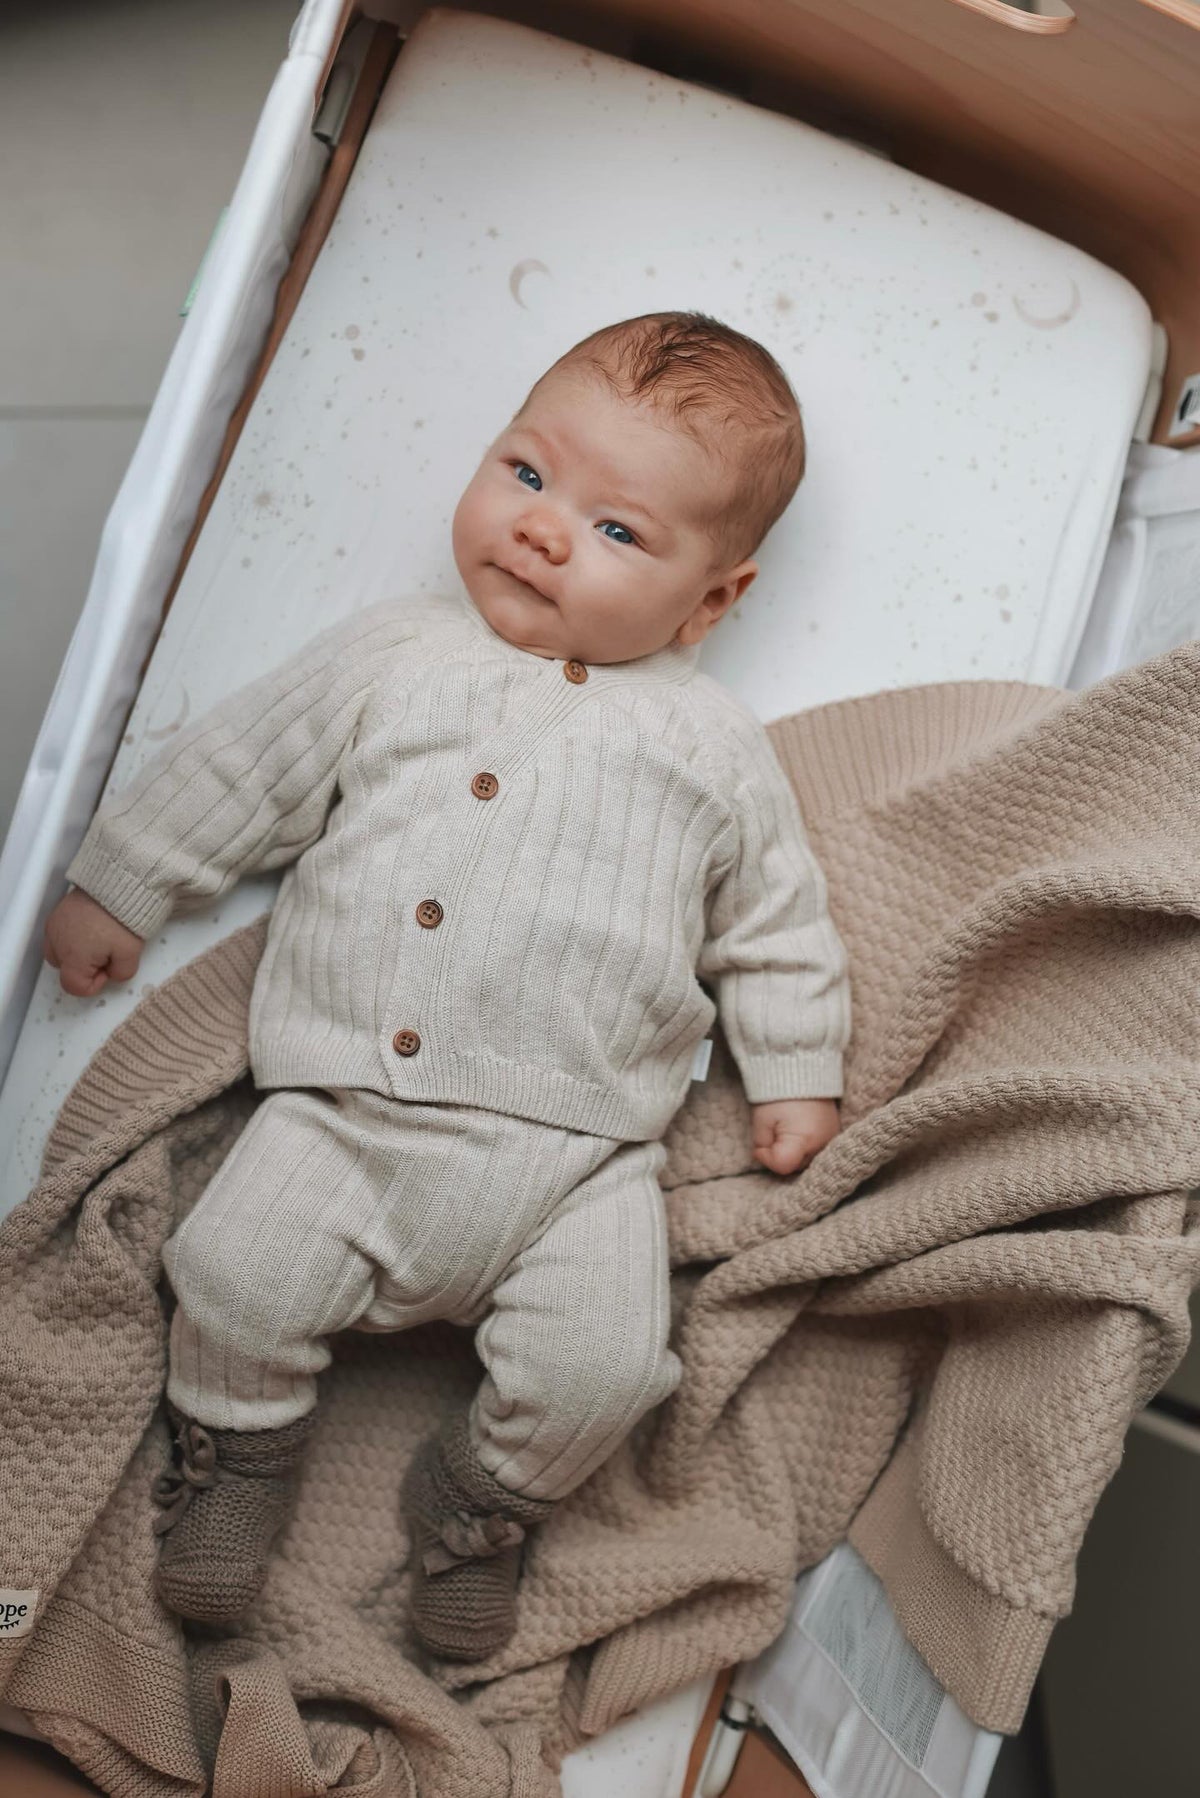 Een serene baby met betoverende blauwe ogen die comfortabel in een co-sleeper ligt, gekleed in een gezellig beige outfit gemaakt van Oeko-Tex katoen, lijkt de mysteries van het leven te overdenken met een Yumi Baby Wieghoeslaken Galaxy.